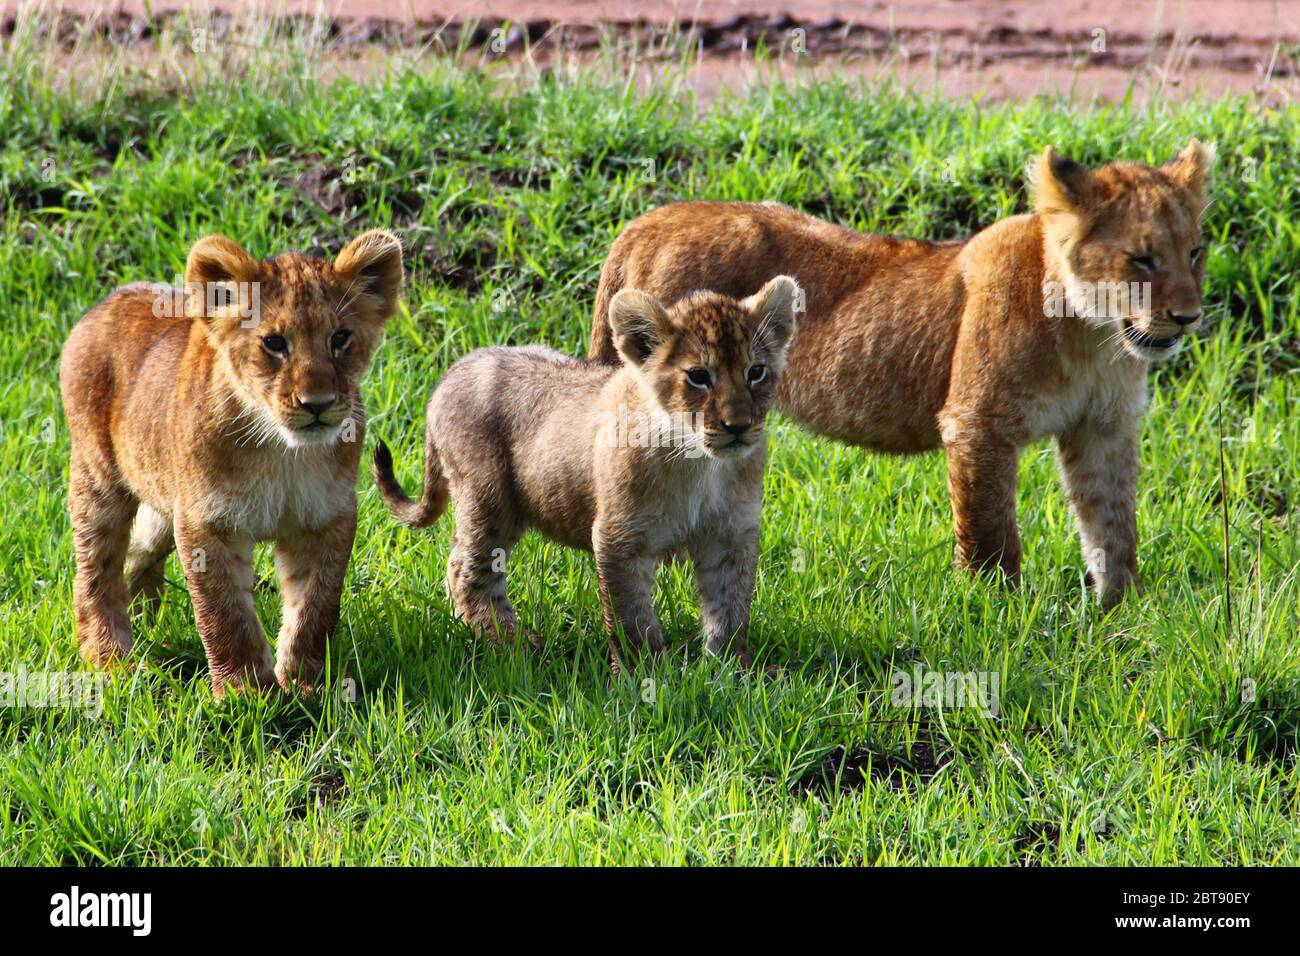 Les Lions, trois petits d'âges différents, parcourent l'herbe verte de la savane kenyane Banque D'Images